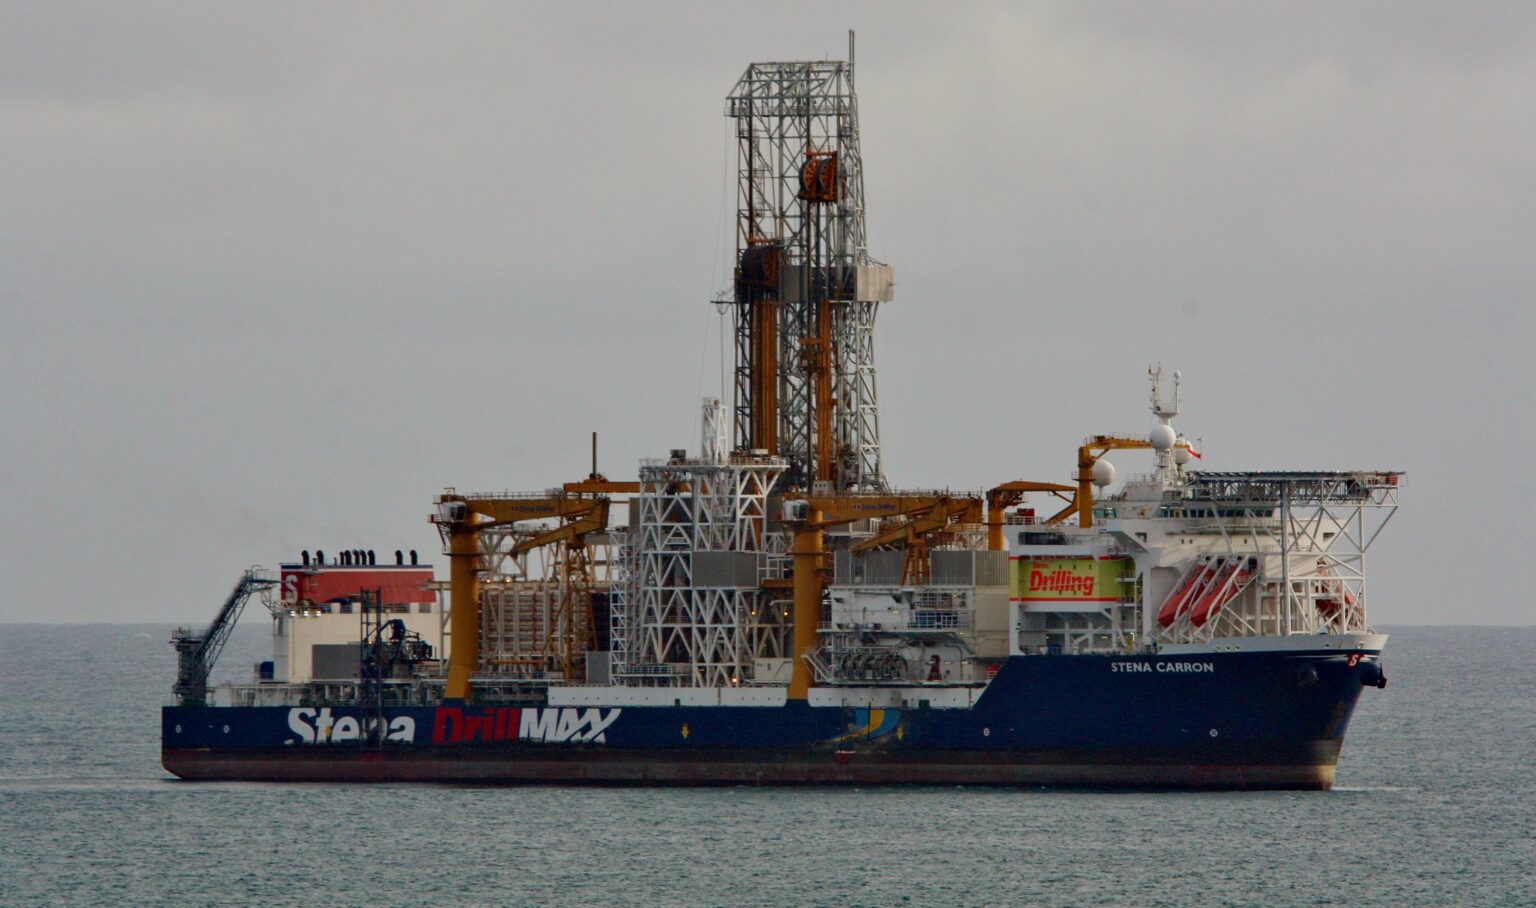 Offshore drillship Stena Carron in the ocean